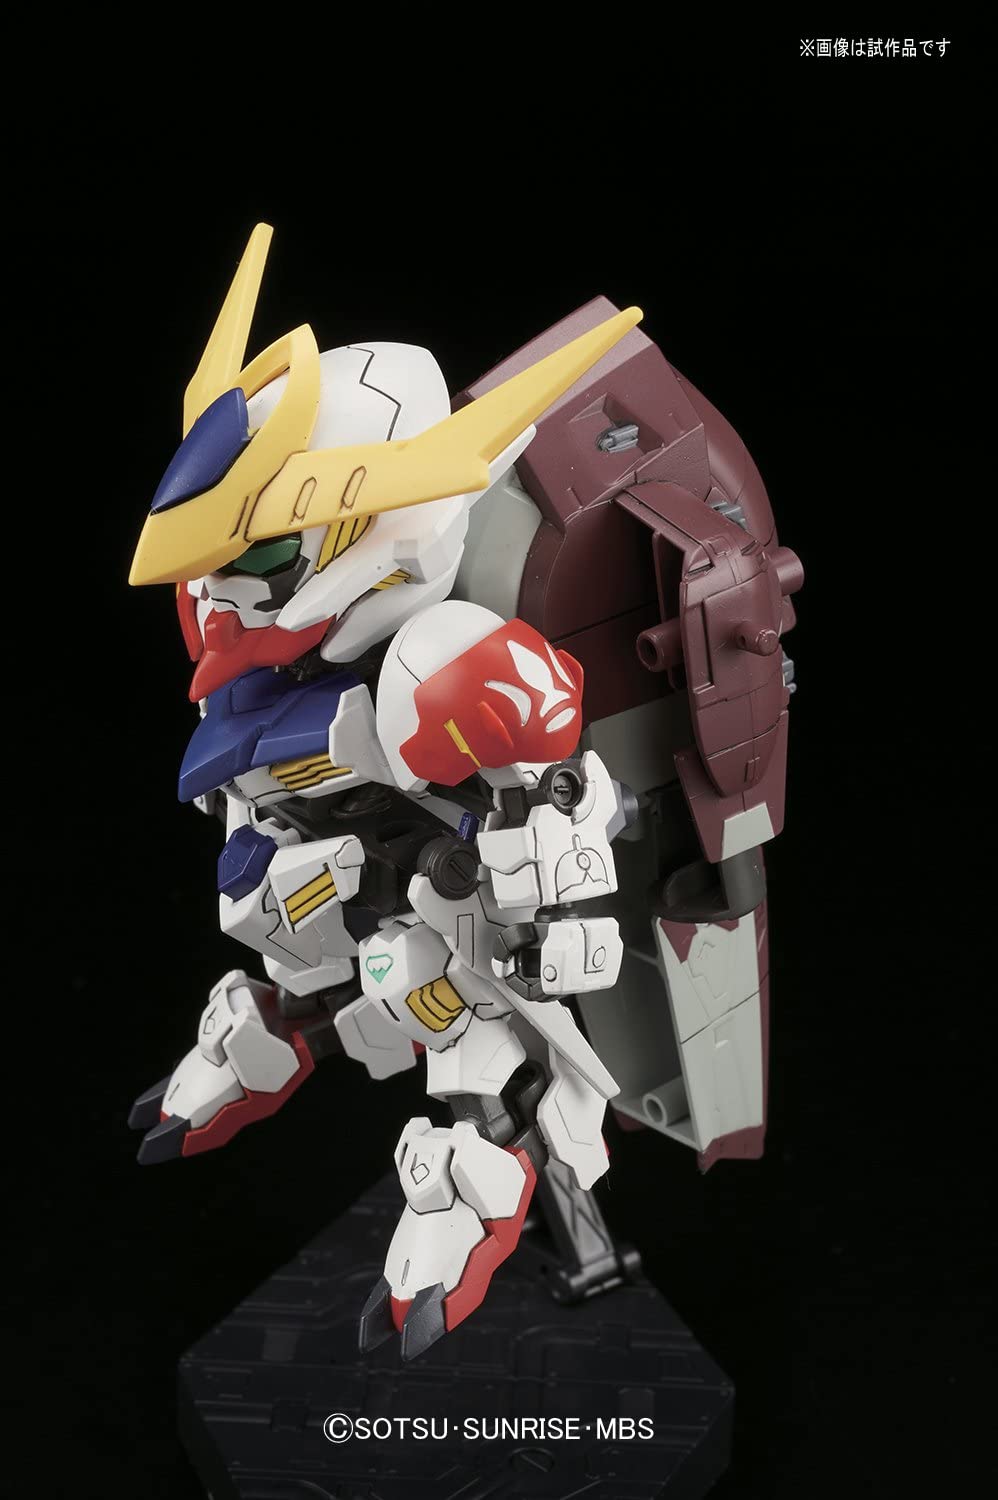 Gundam SD BB #402 Gundam Barbatos Lupus DX Model Kit